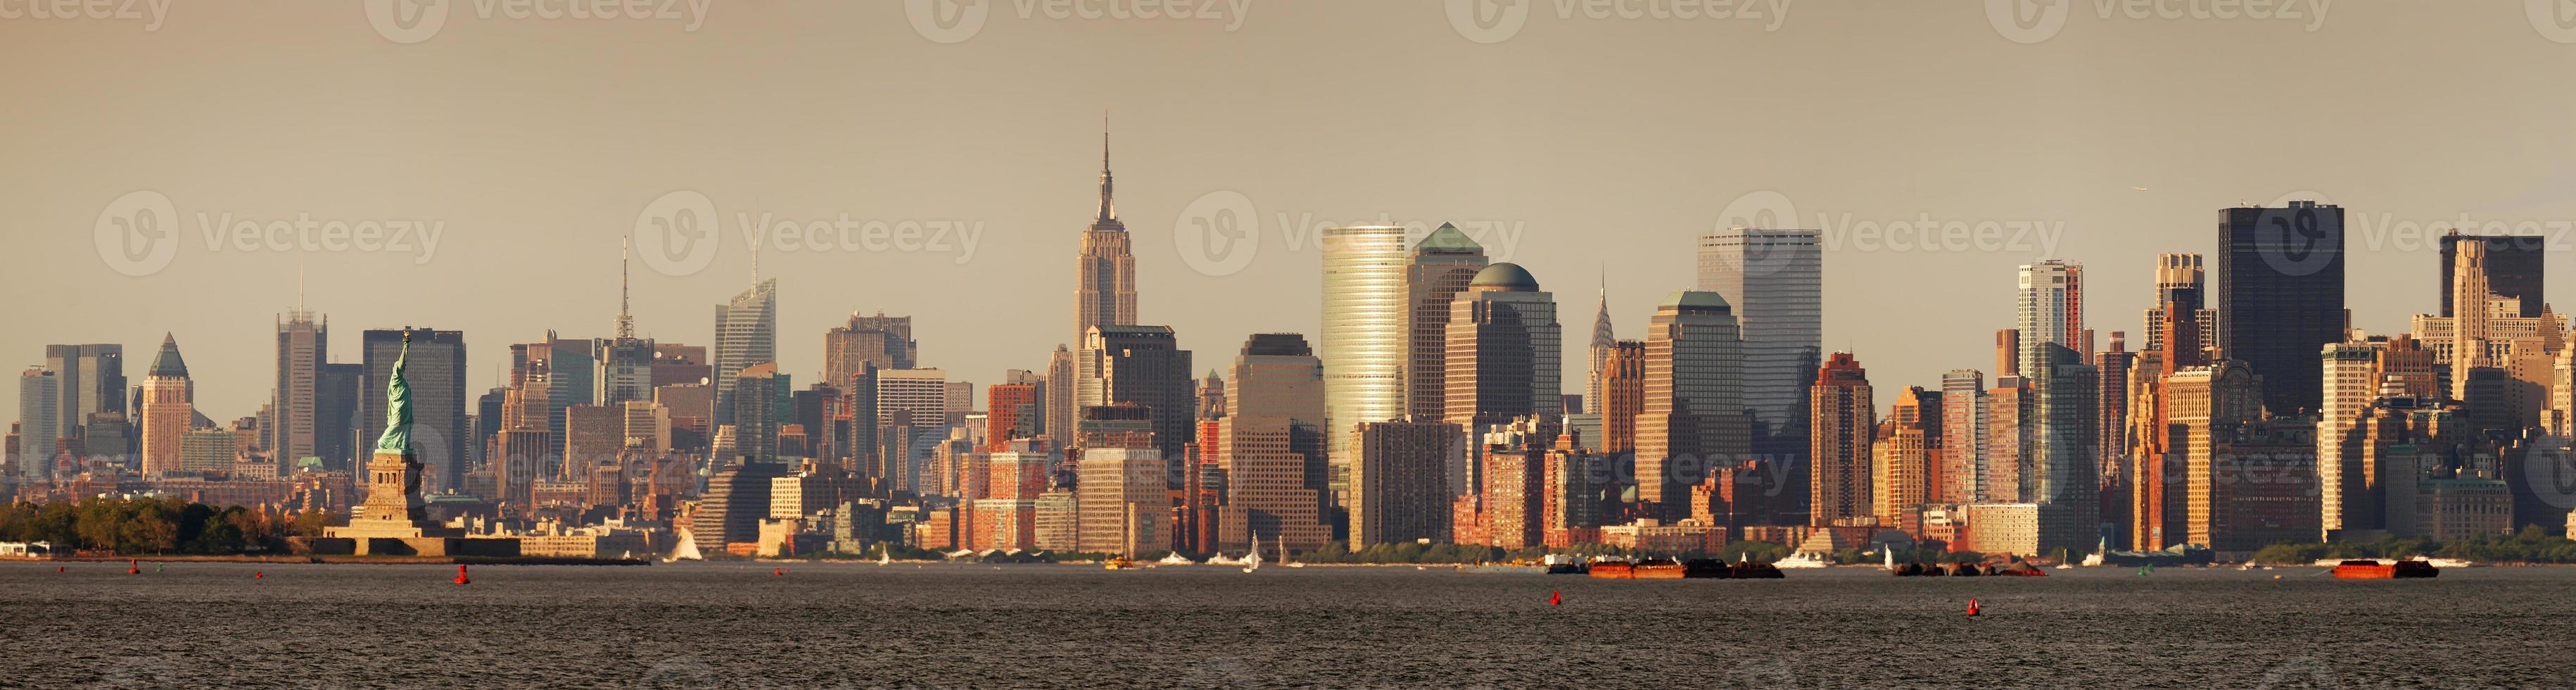 new york city manhattan con la statua della libertà foto